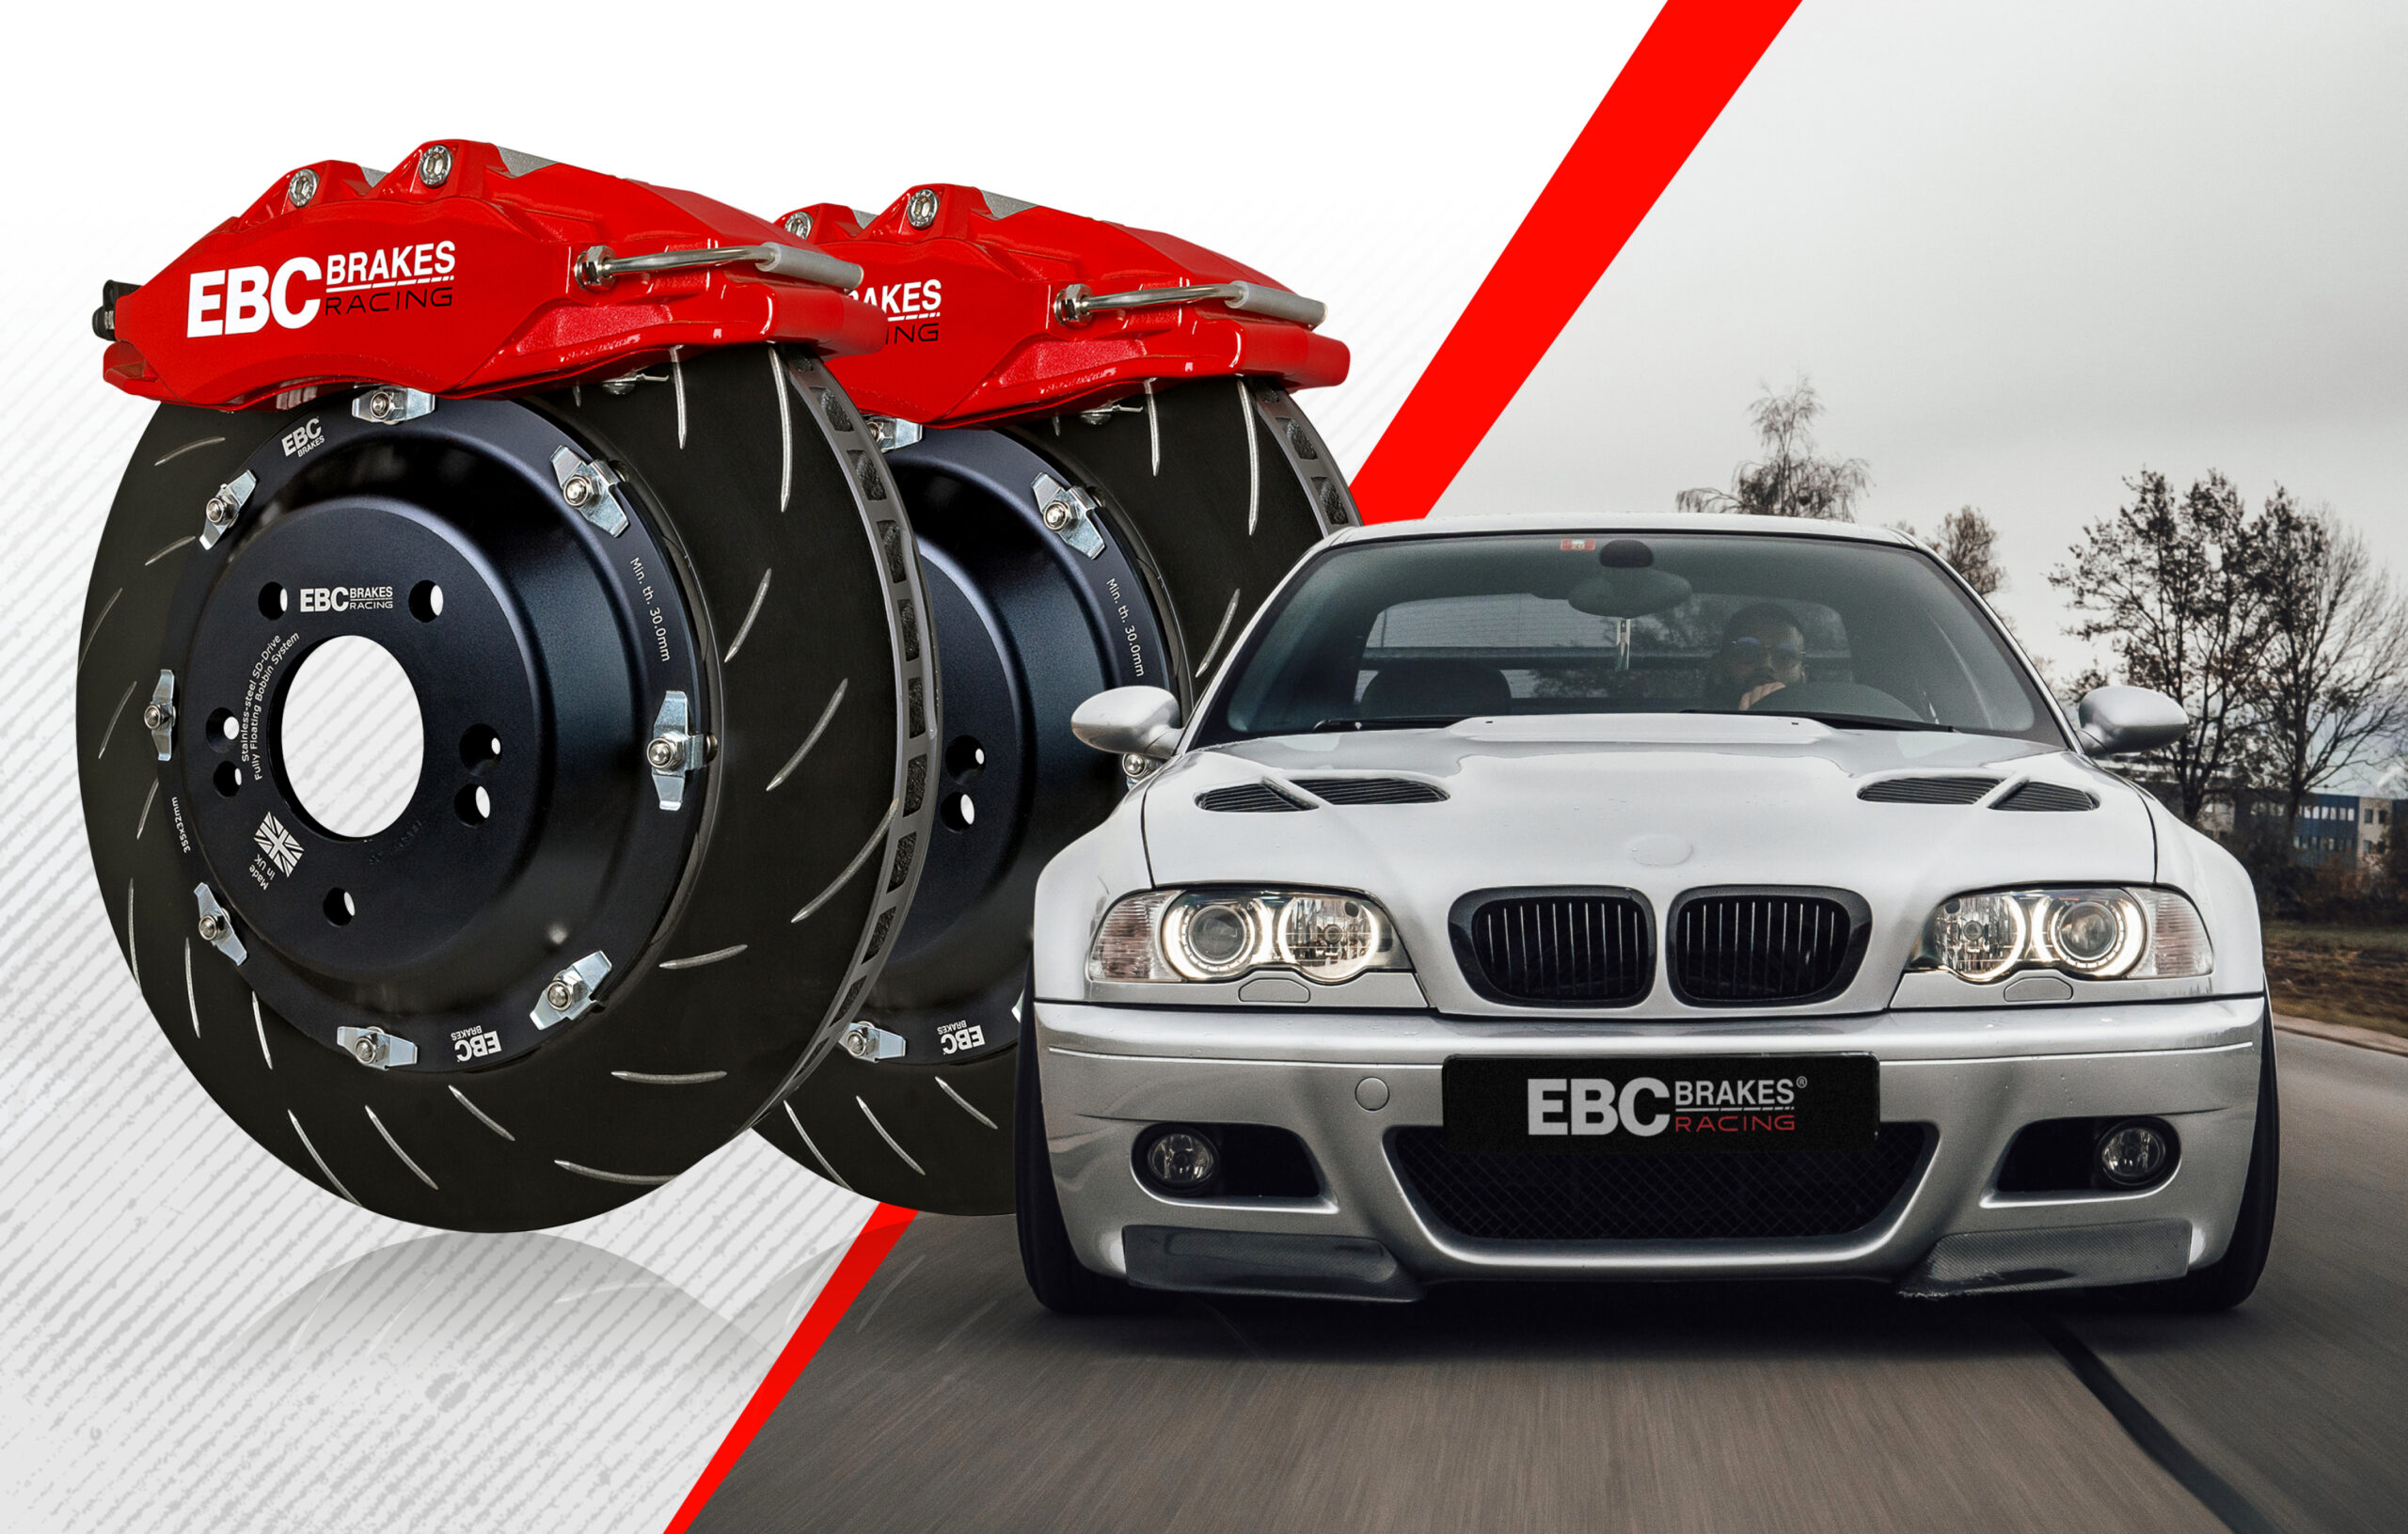 EBC Brakes Racing 6-Piston Apollo Big Brake Kit Now Available for the BMW M3 (E46)